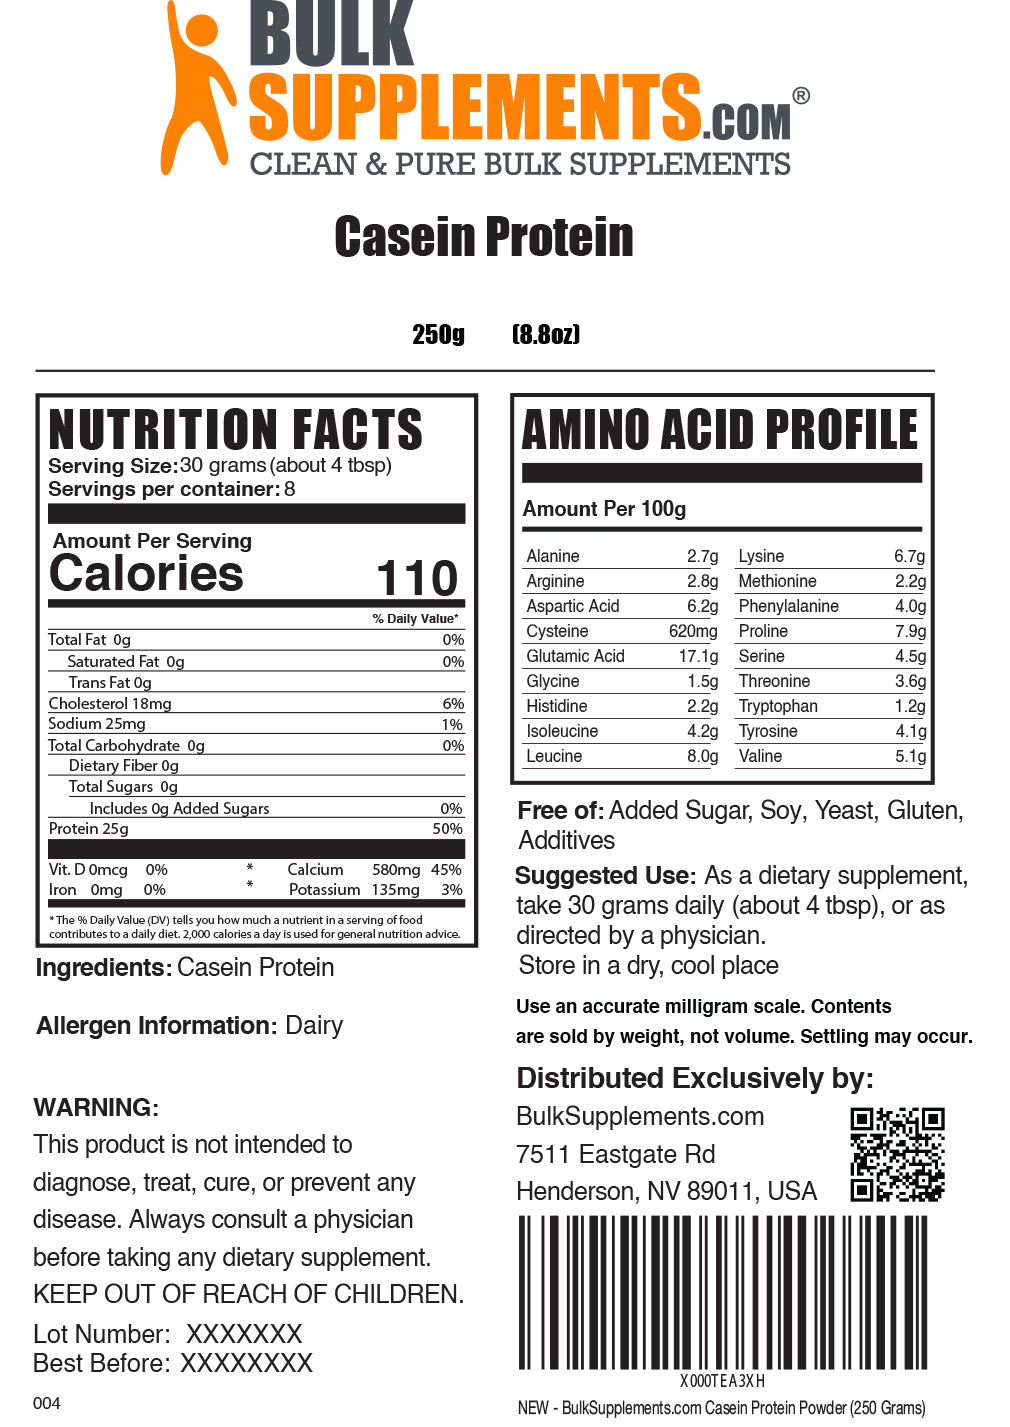 500g casein protein powder supplement facts label